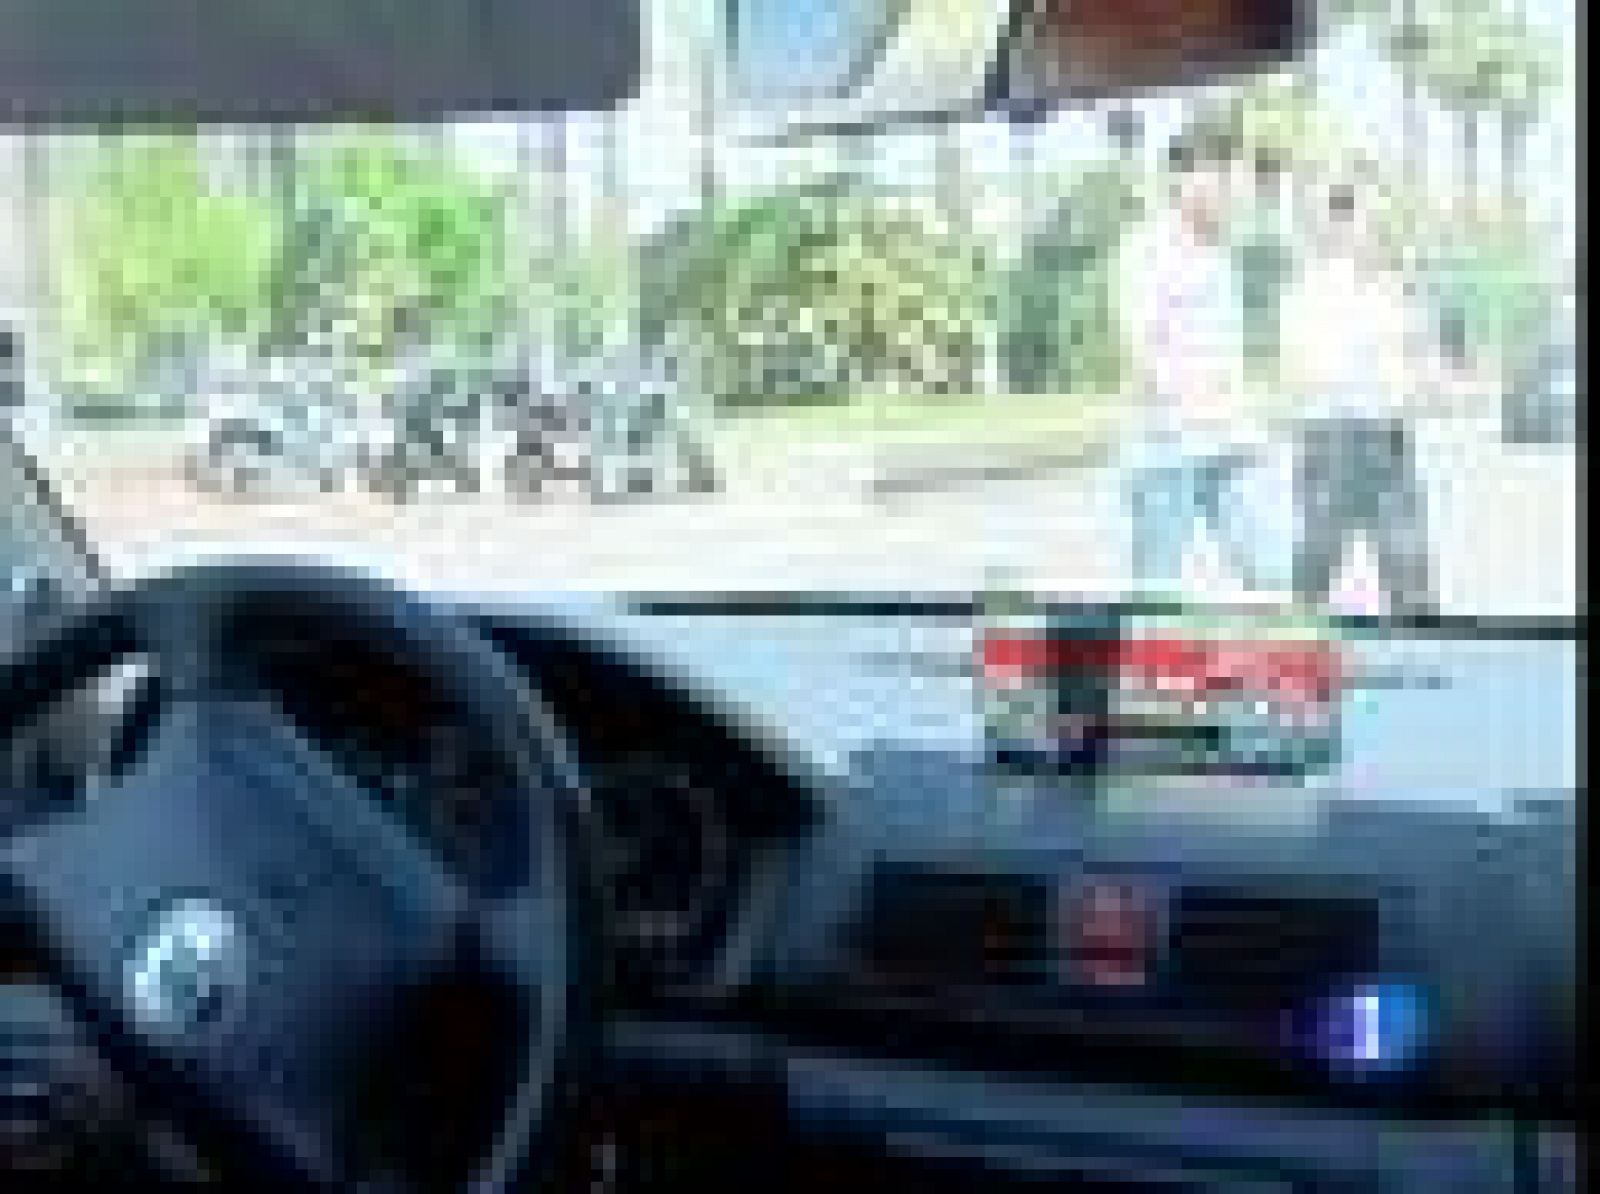 En 190 viajes, la OCU ha detectado más de 500 infracciones. El gremio de los taxistas lo niega y va a estudiar si denuncian a la organización de consumidores.